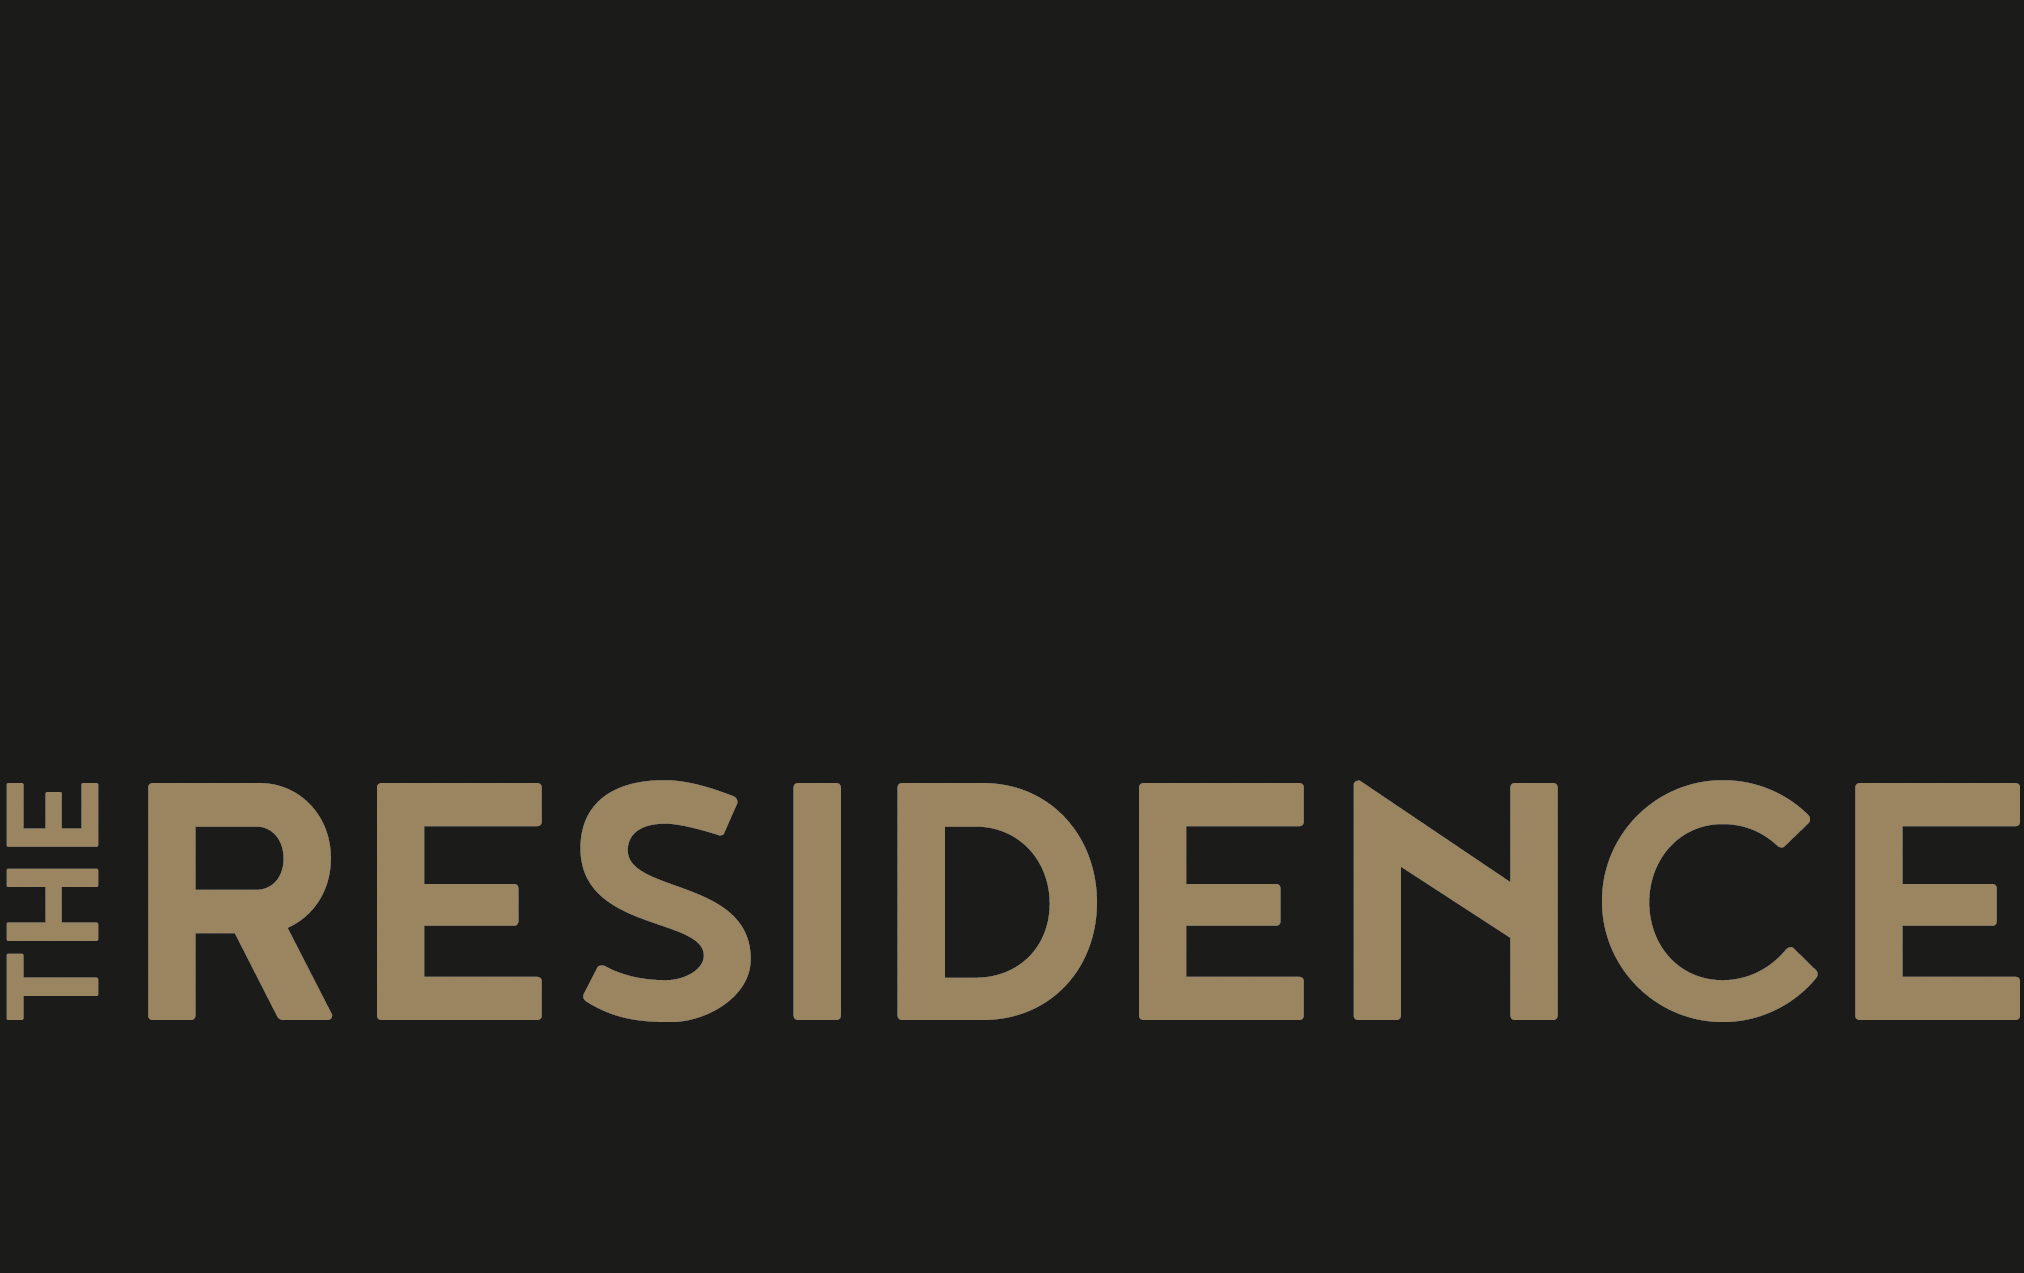 The residence logo